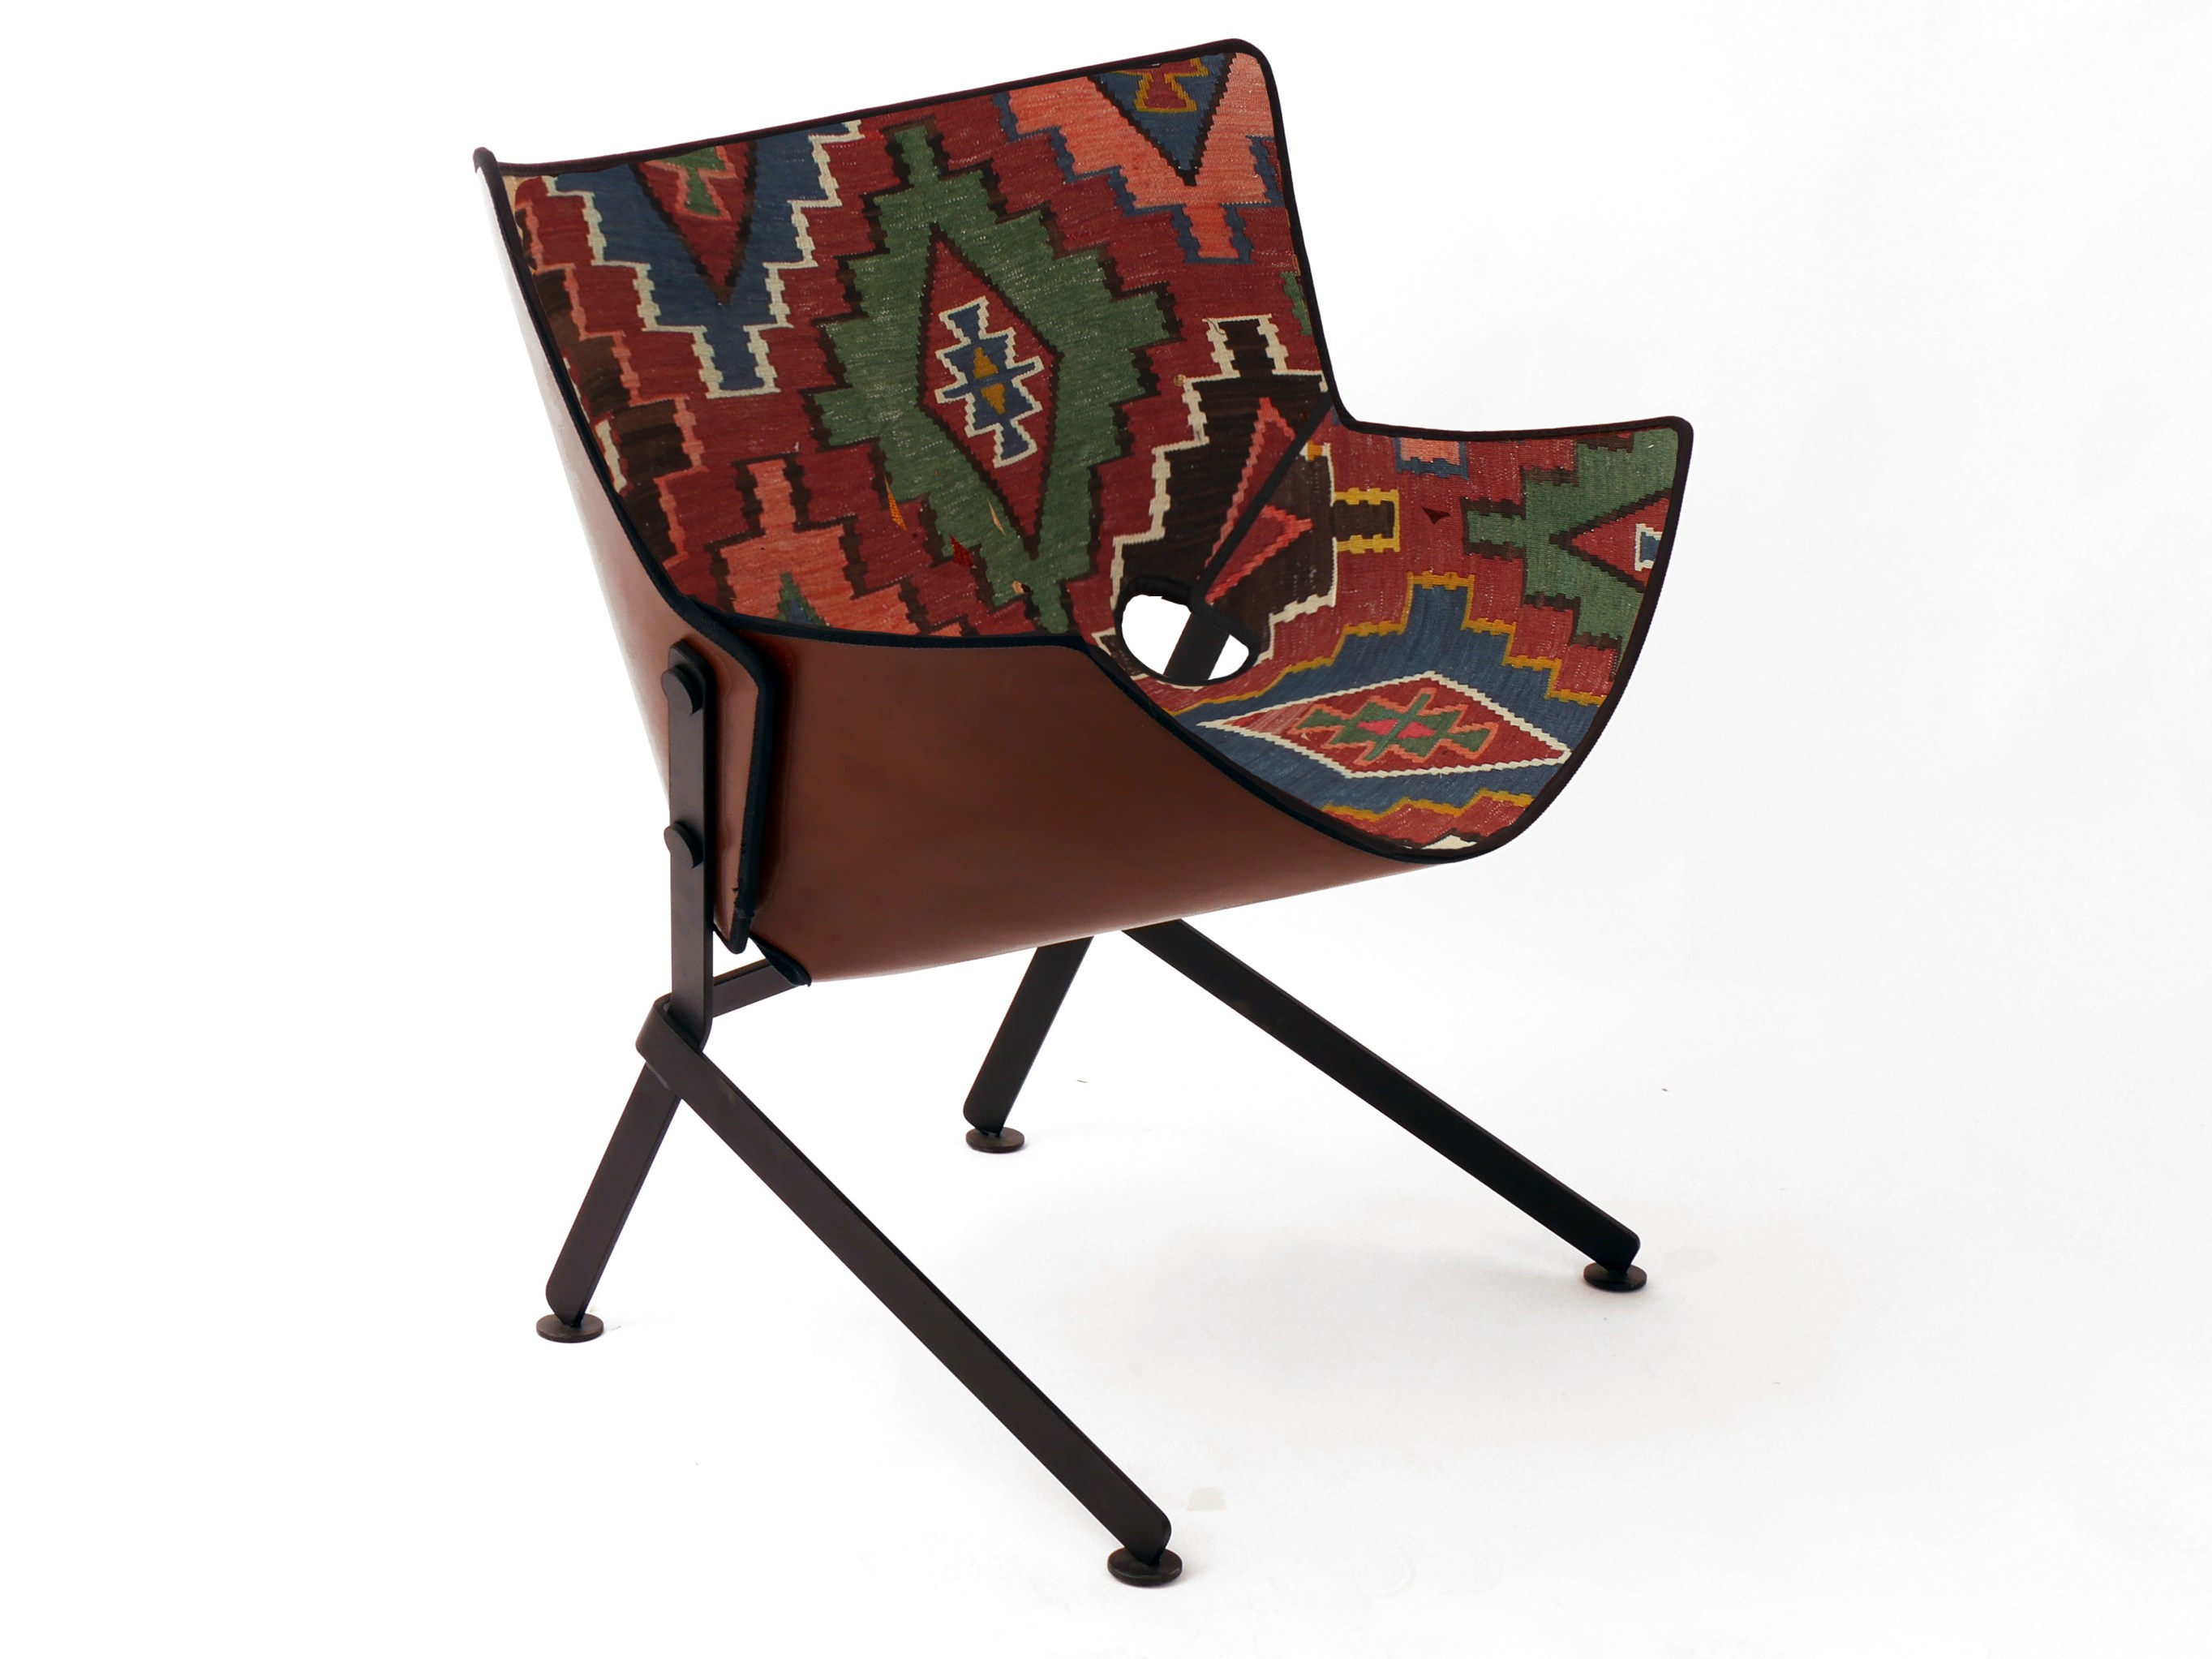 El Santo Libre Lounge Chair by Christophe de la Fontaine for Dante